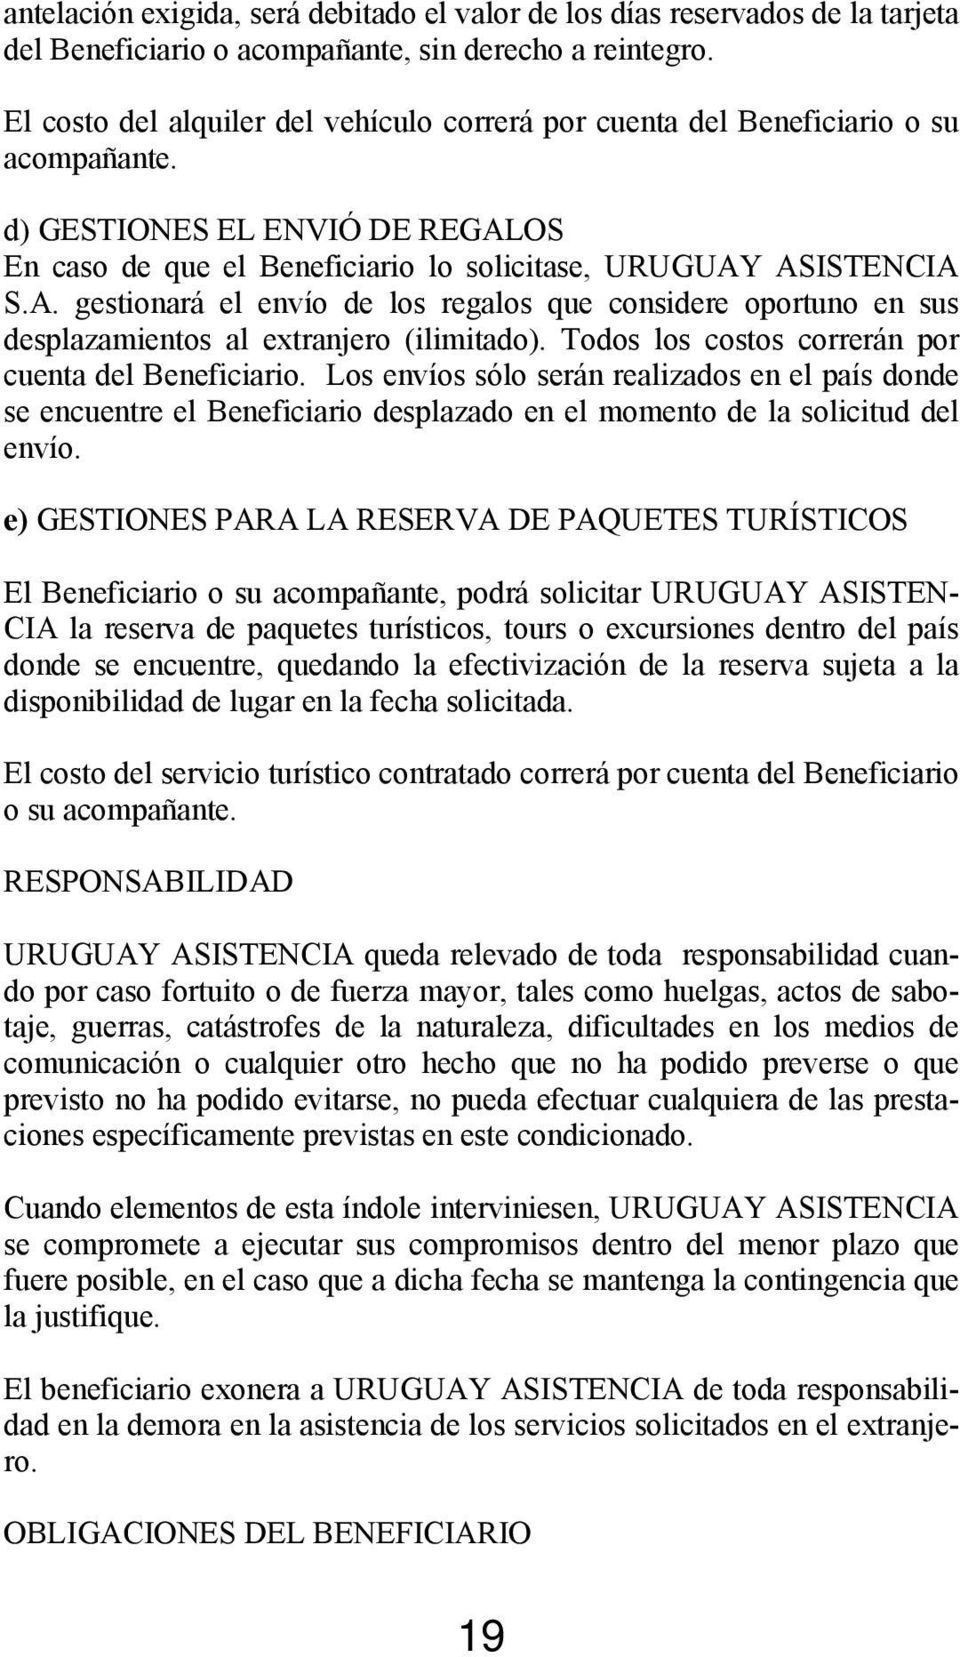 OS En caso de que el Beneficiario lo solicitase, URUGUAY ASISTENCIA S.A. gestionará el envío de los regalos que considere oportuno en sus desplazamientos al extranjero (ilimitado).